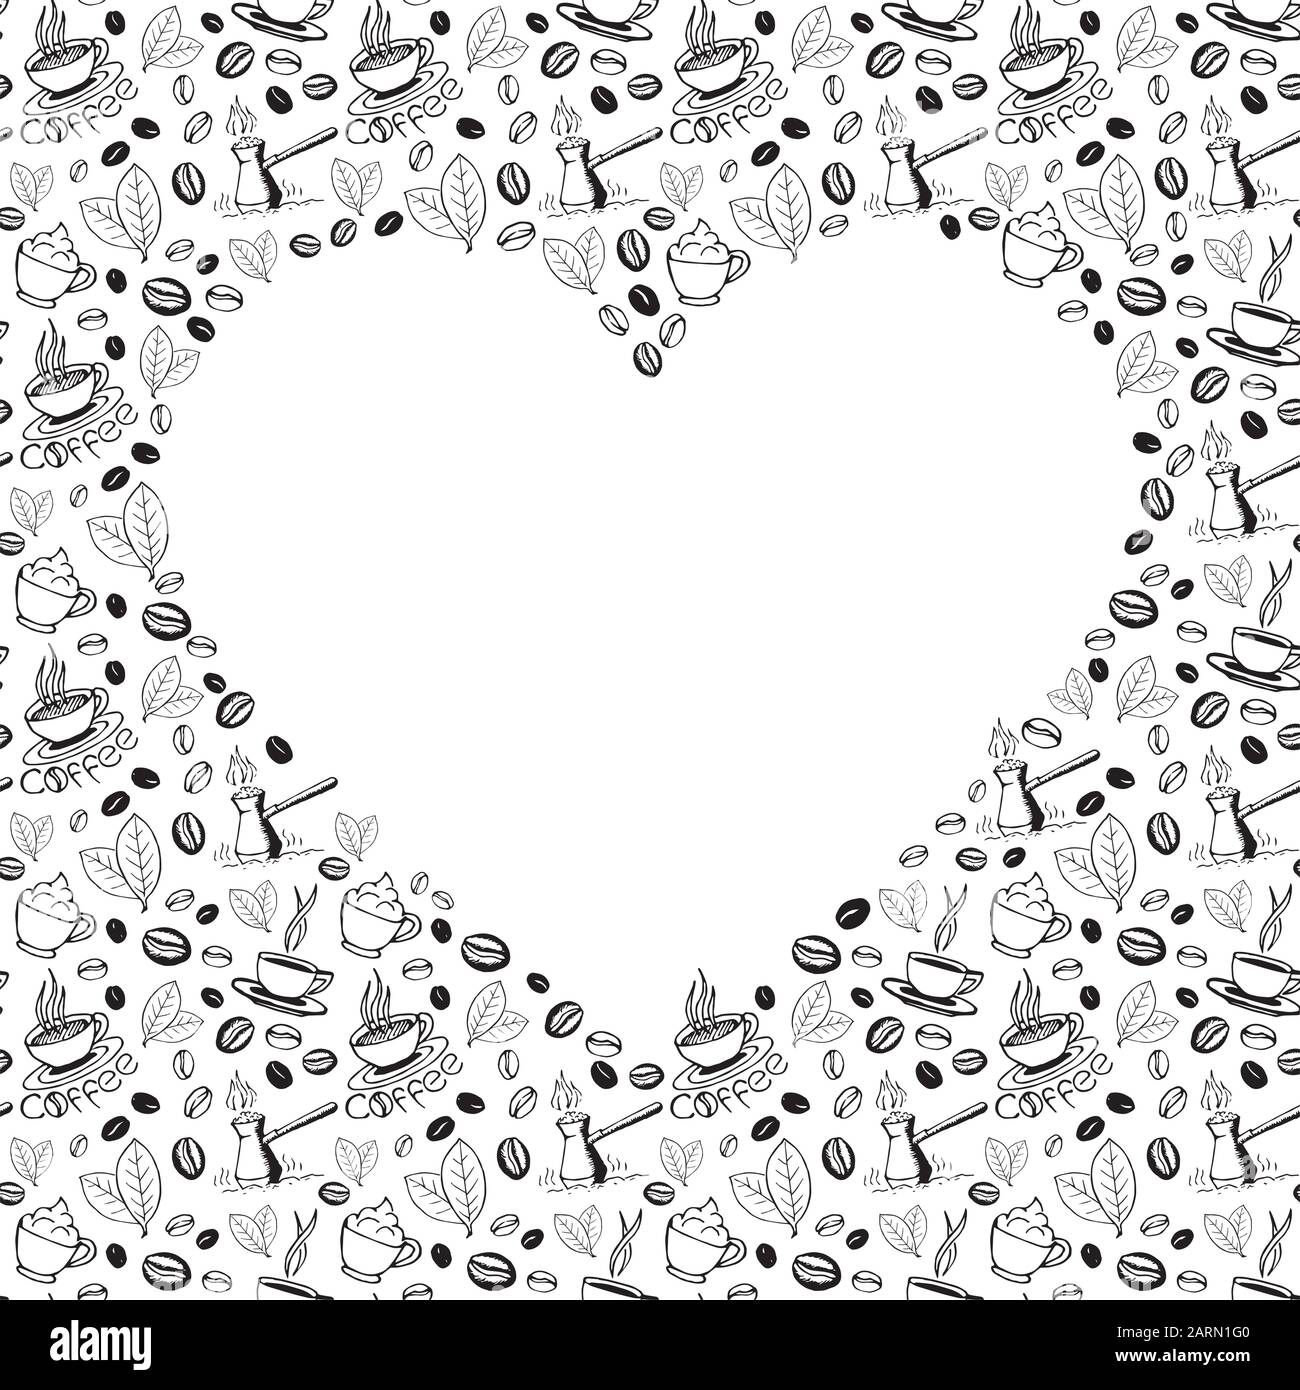 Fond de gribouille de café avec une forme de coeur vierge à l'intérieur. Motif de symboles croquis dessinés à la main. Illustration des eps8 vectorielles. Illustration de Vecteur